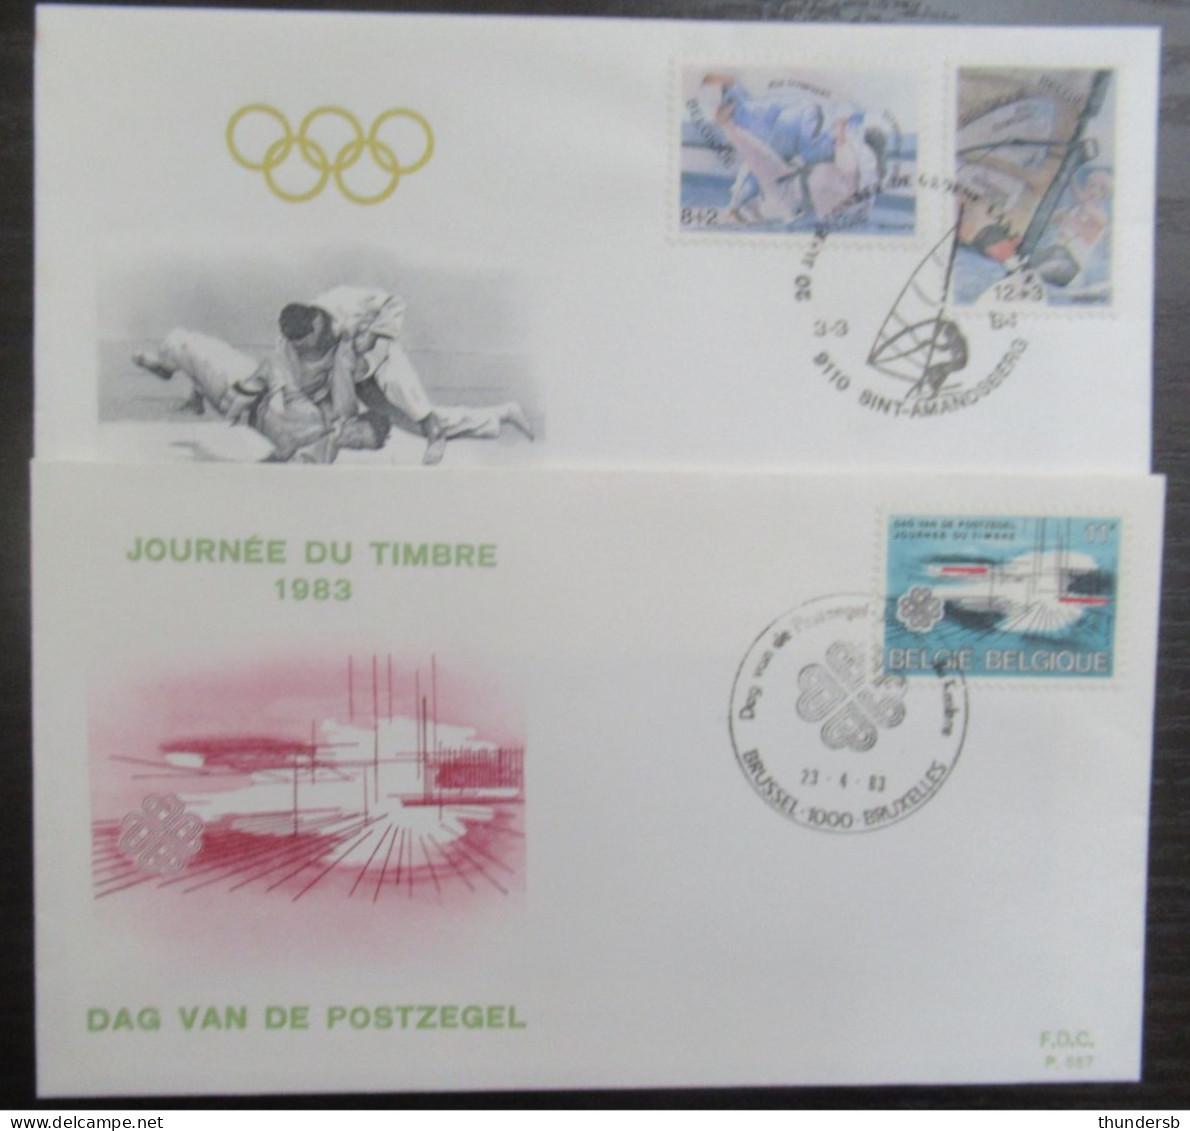 FDC 2089 En 2119/20 'Olympische Spelen LA' - 1981-1990